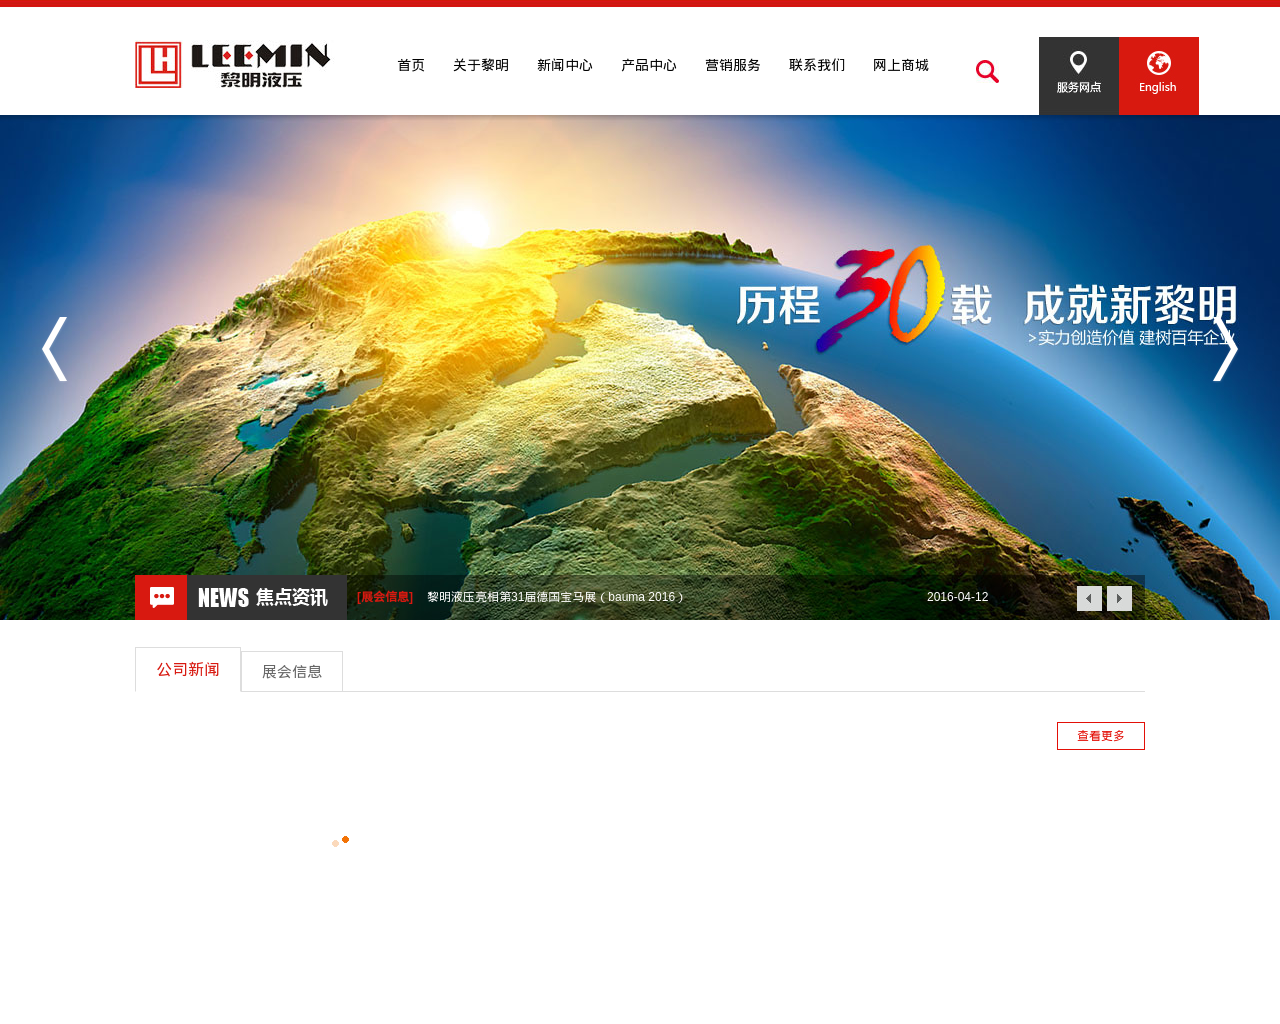 leemin.com.cn